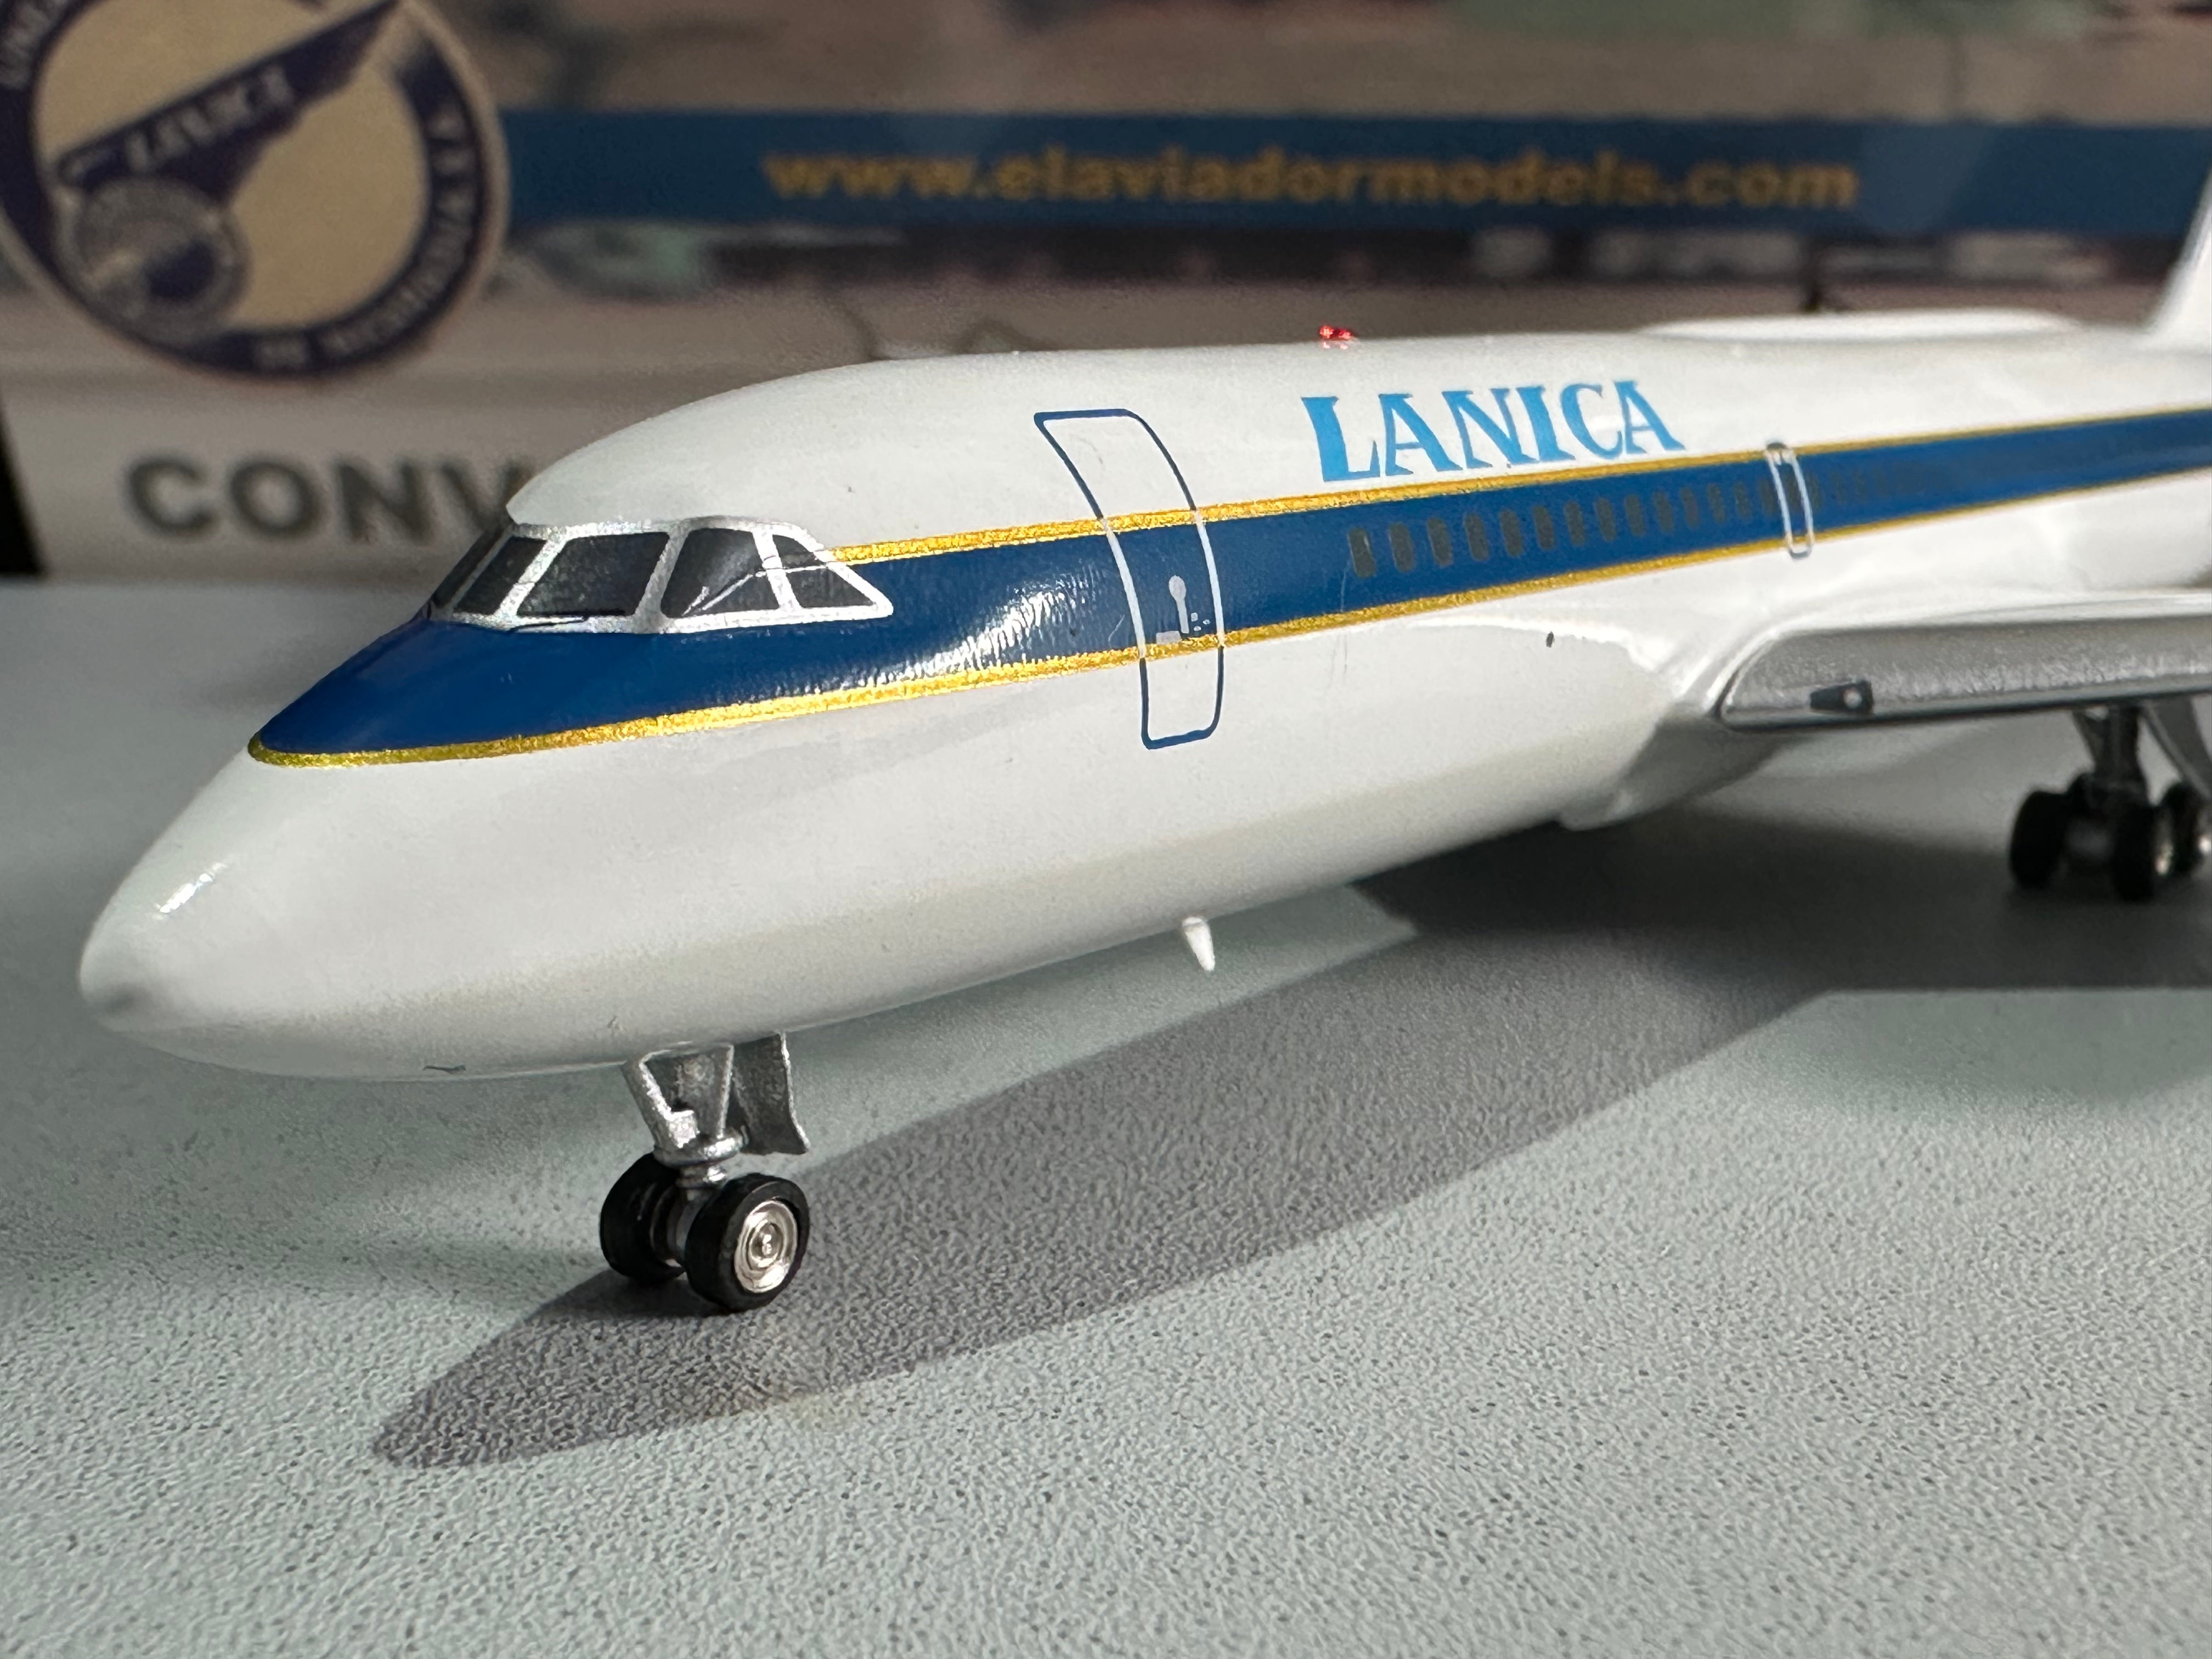 LANICA / Convair 880-22-1 / AN-BIB / EAVBIB / 1:200 elaviadormodels